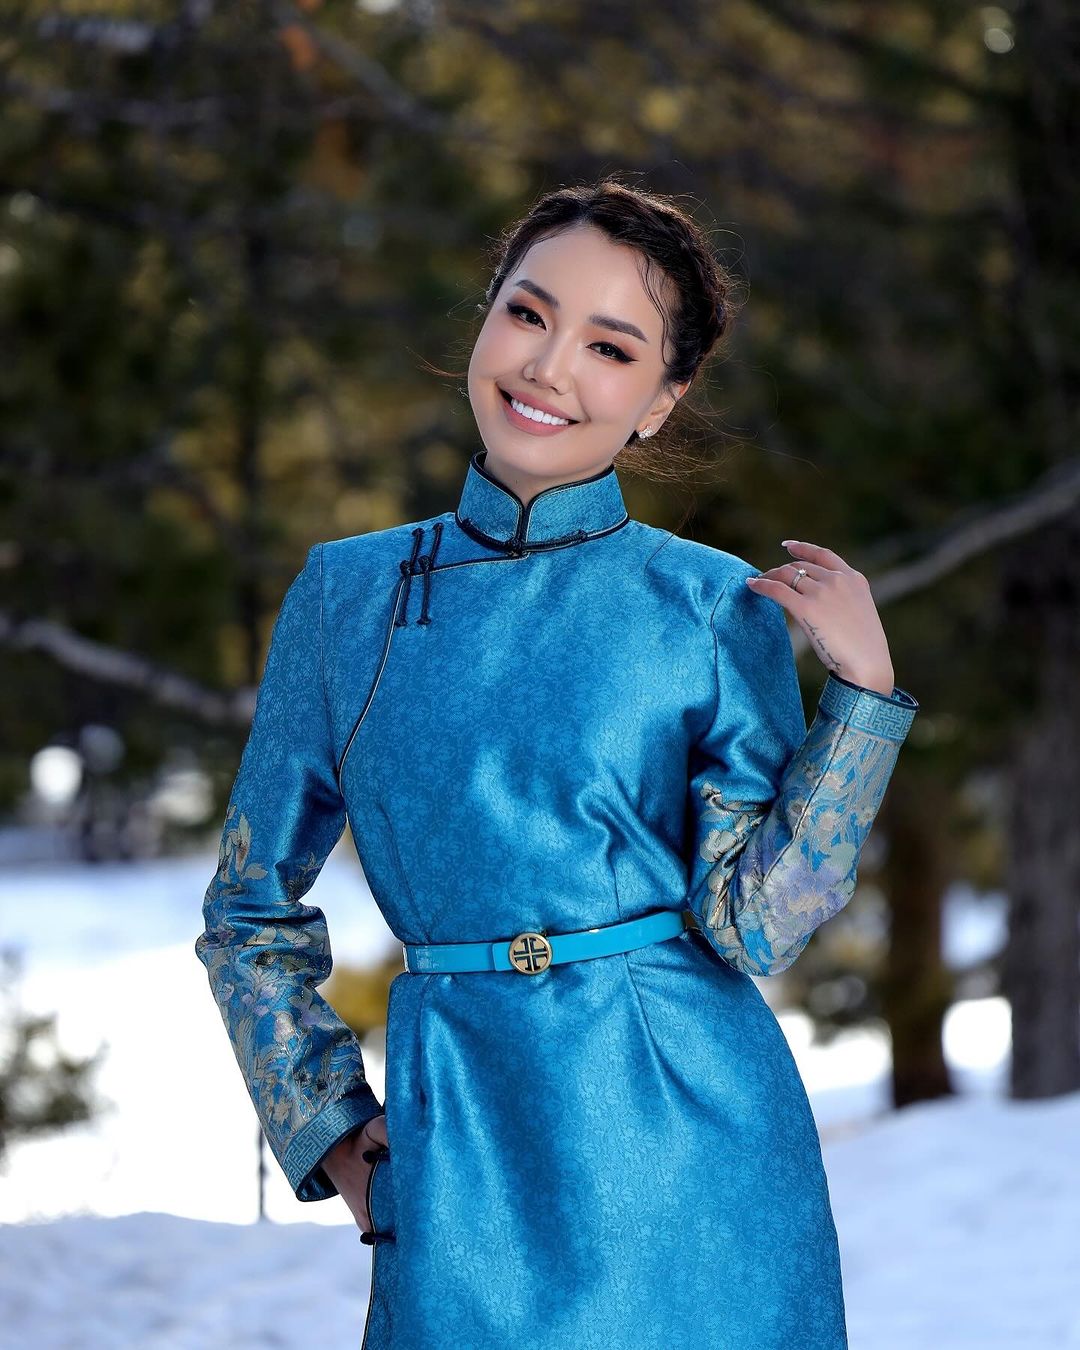 Mongolian women